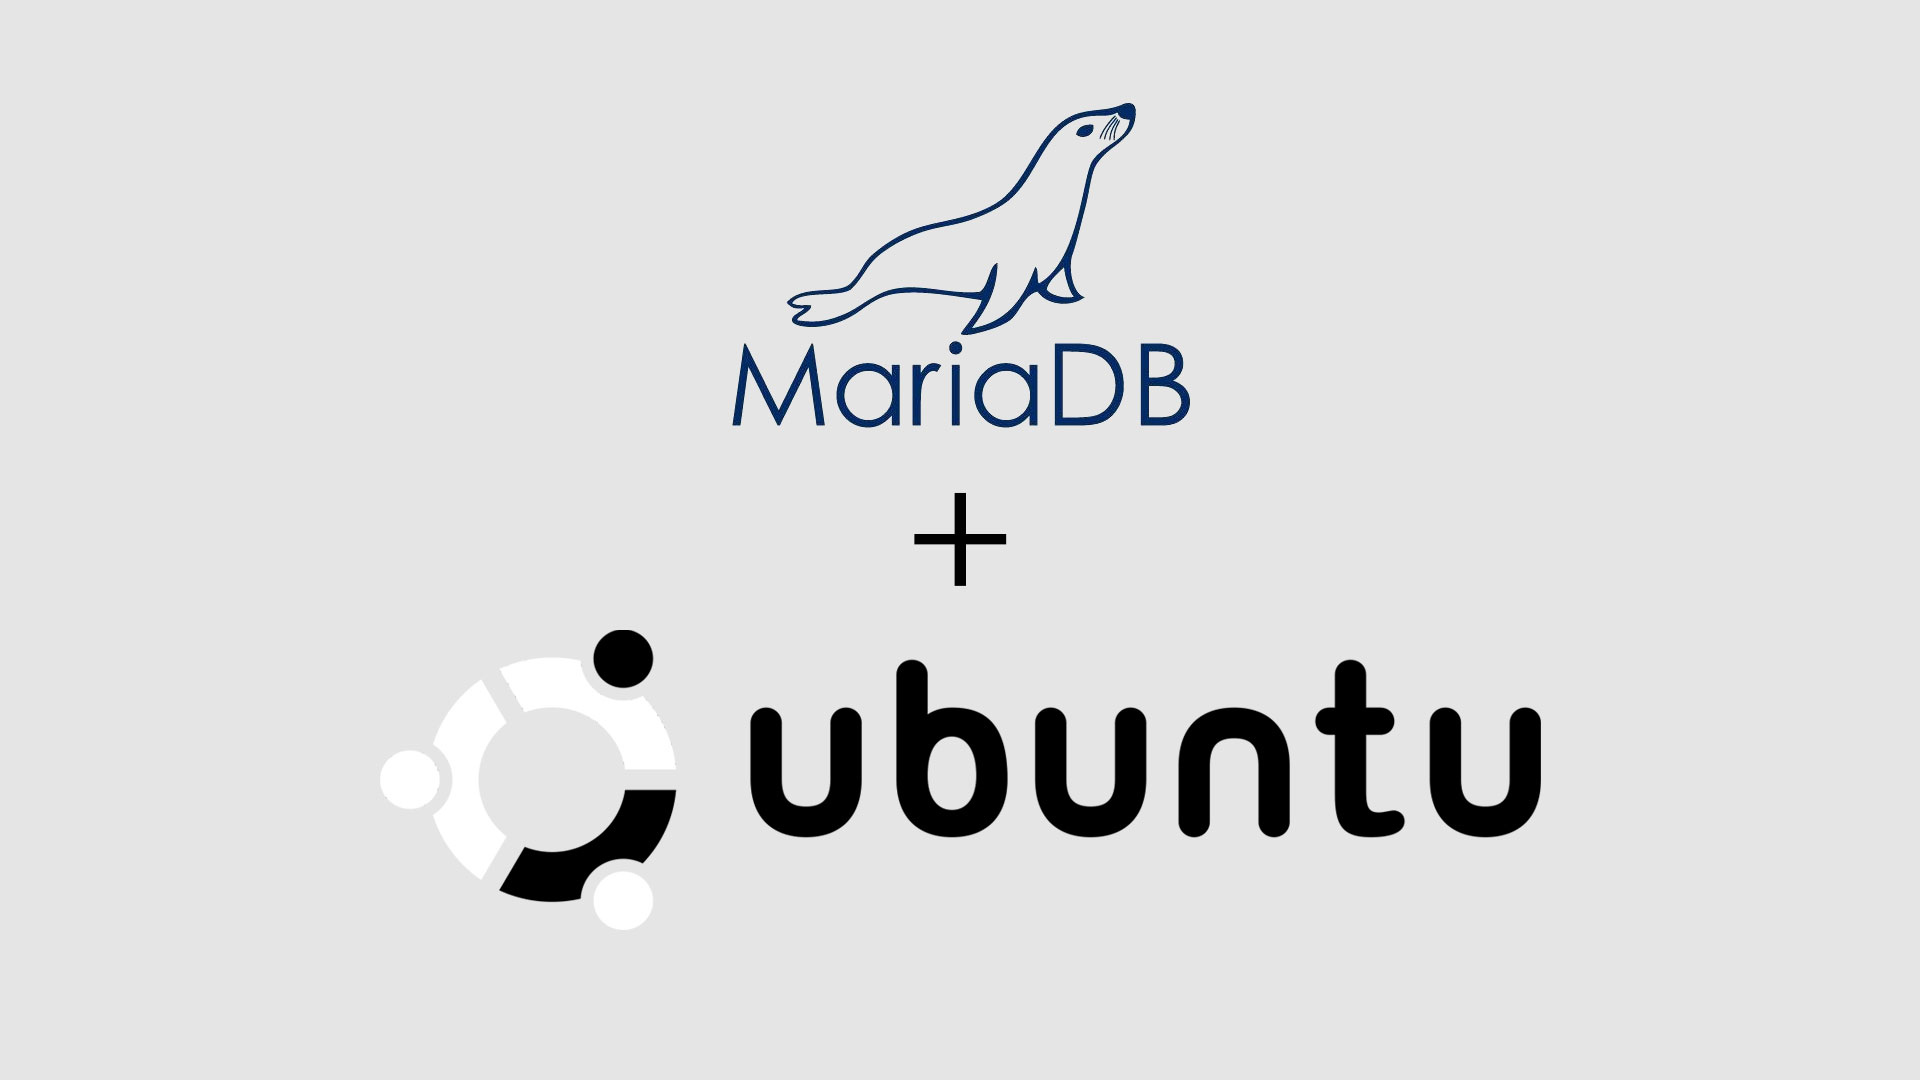 How to Install MariaDB on Ubuntu 16.04 / 18.04 / 18.10